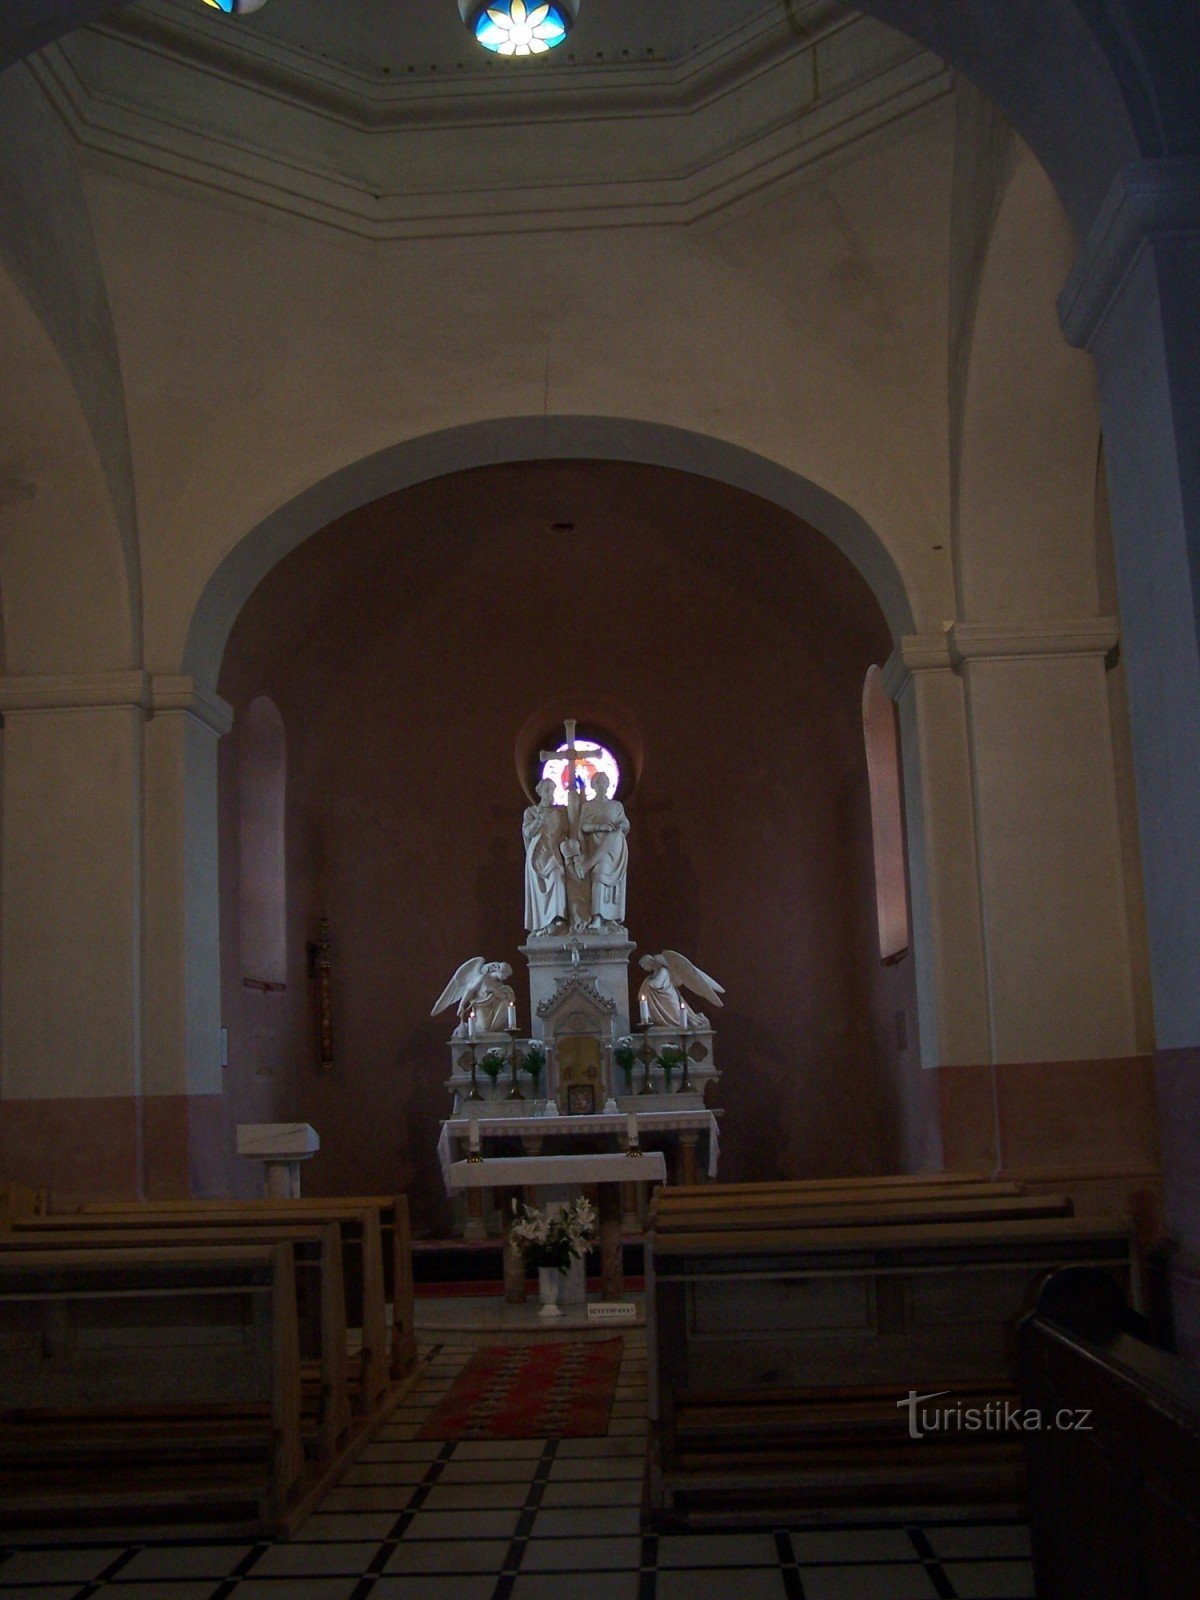 ラドホシュチェの礼拝堂の内部